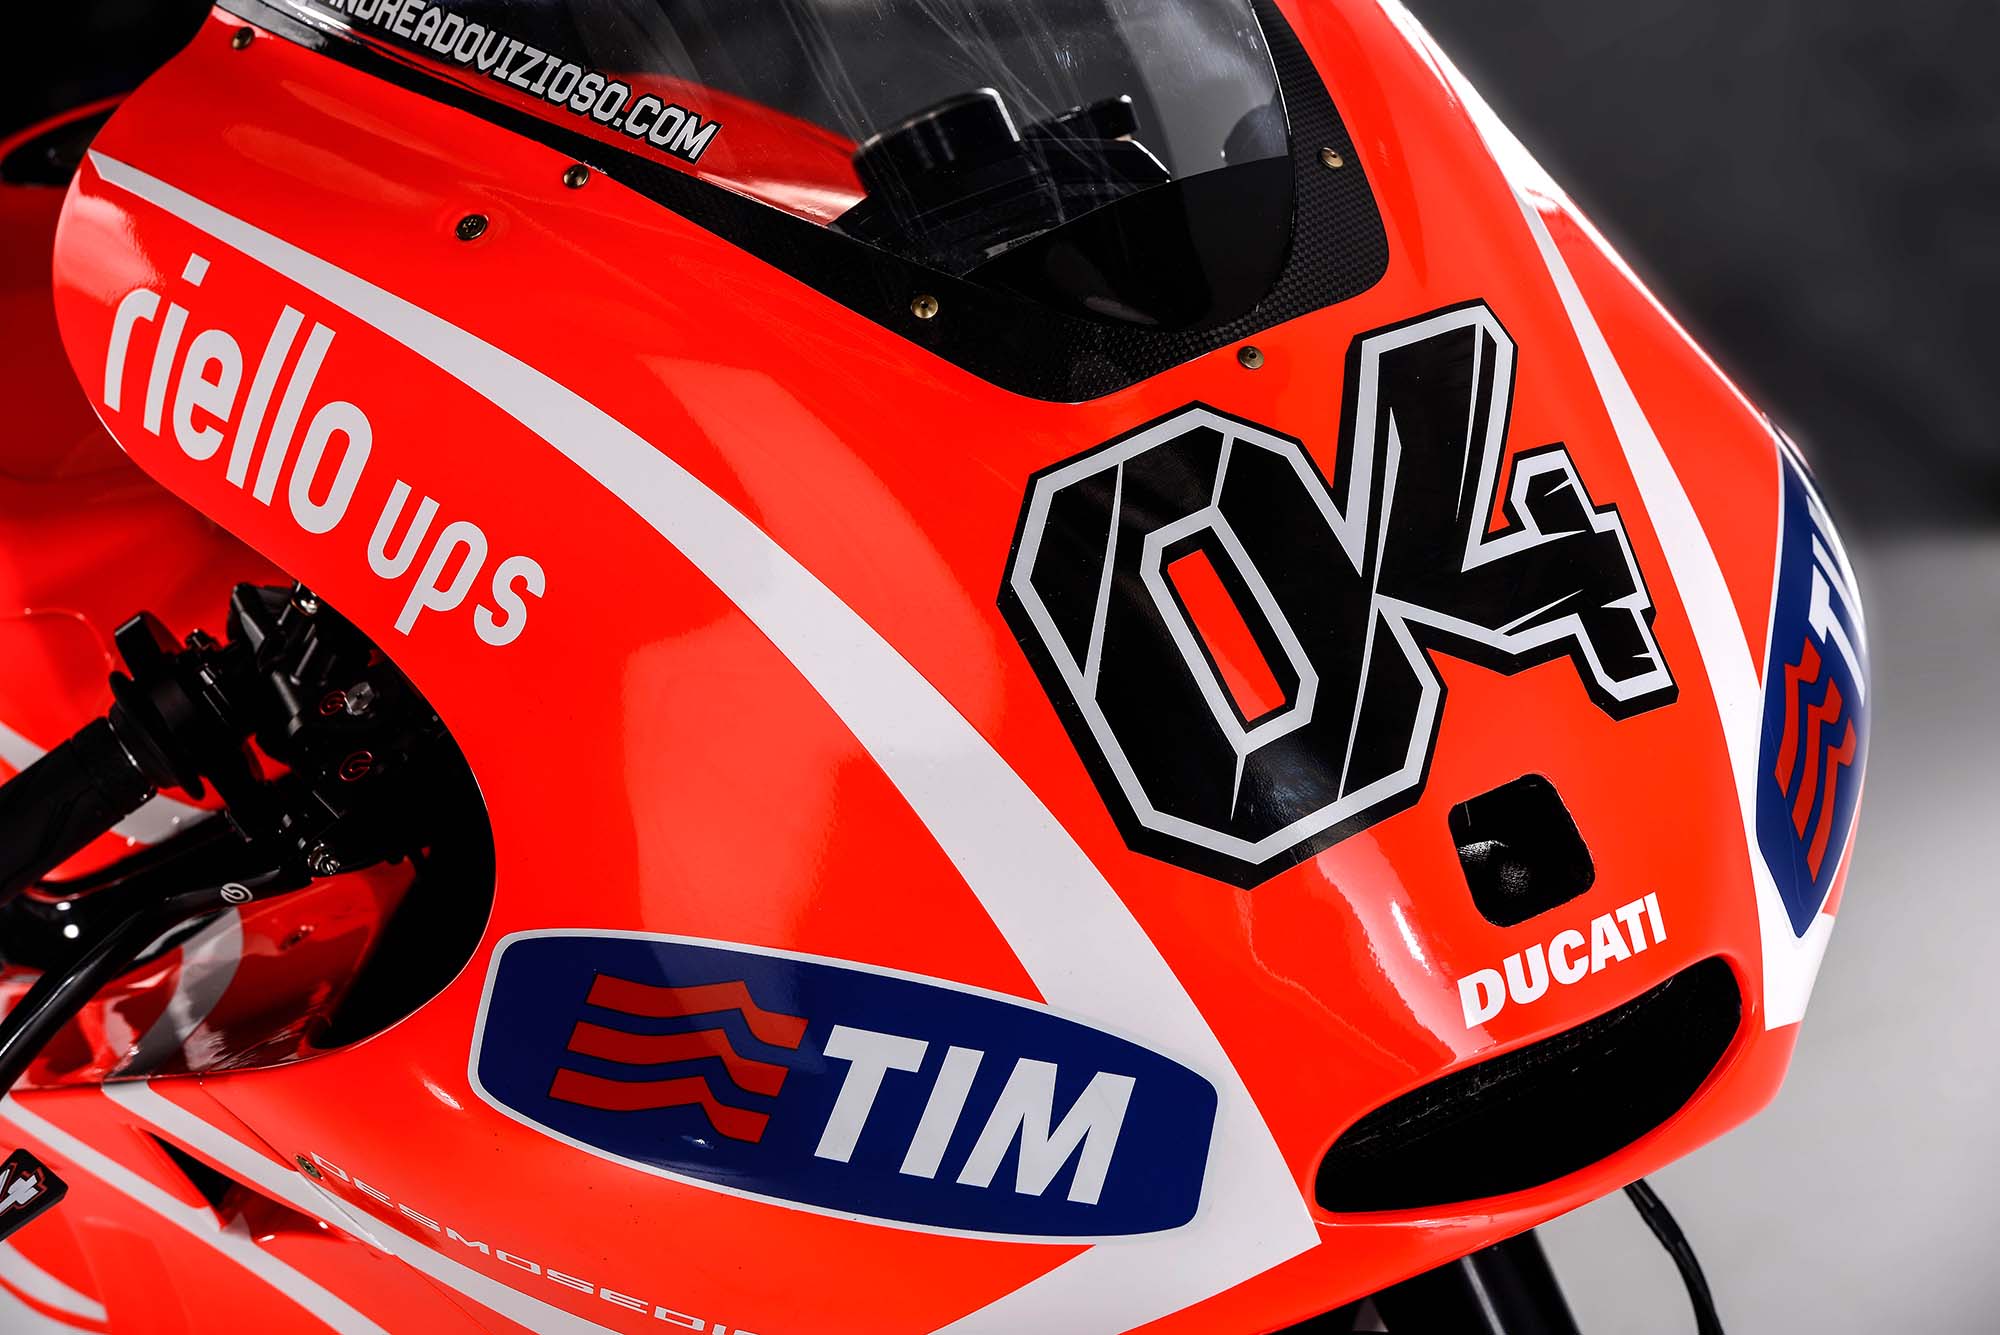 2013, Ducati, Desmosedici, Gp13, Grand, Prix, Race, Racing Wallpaper